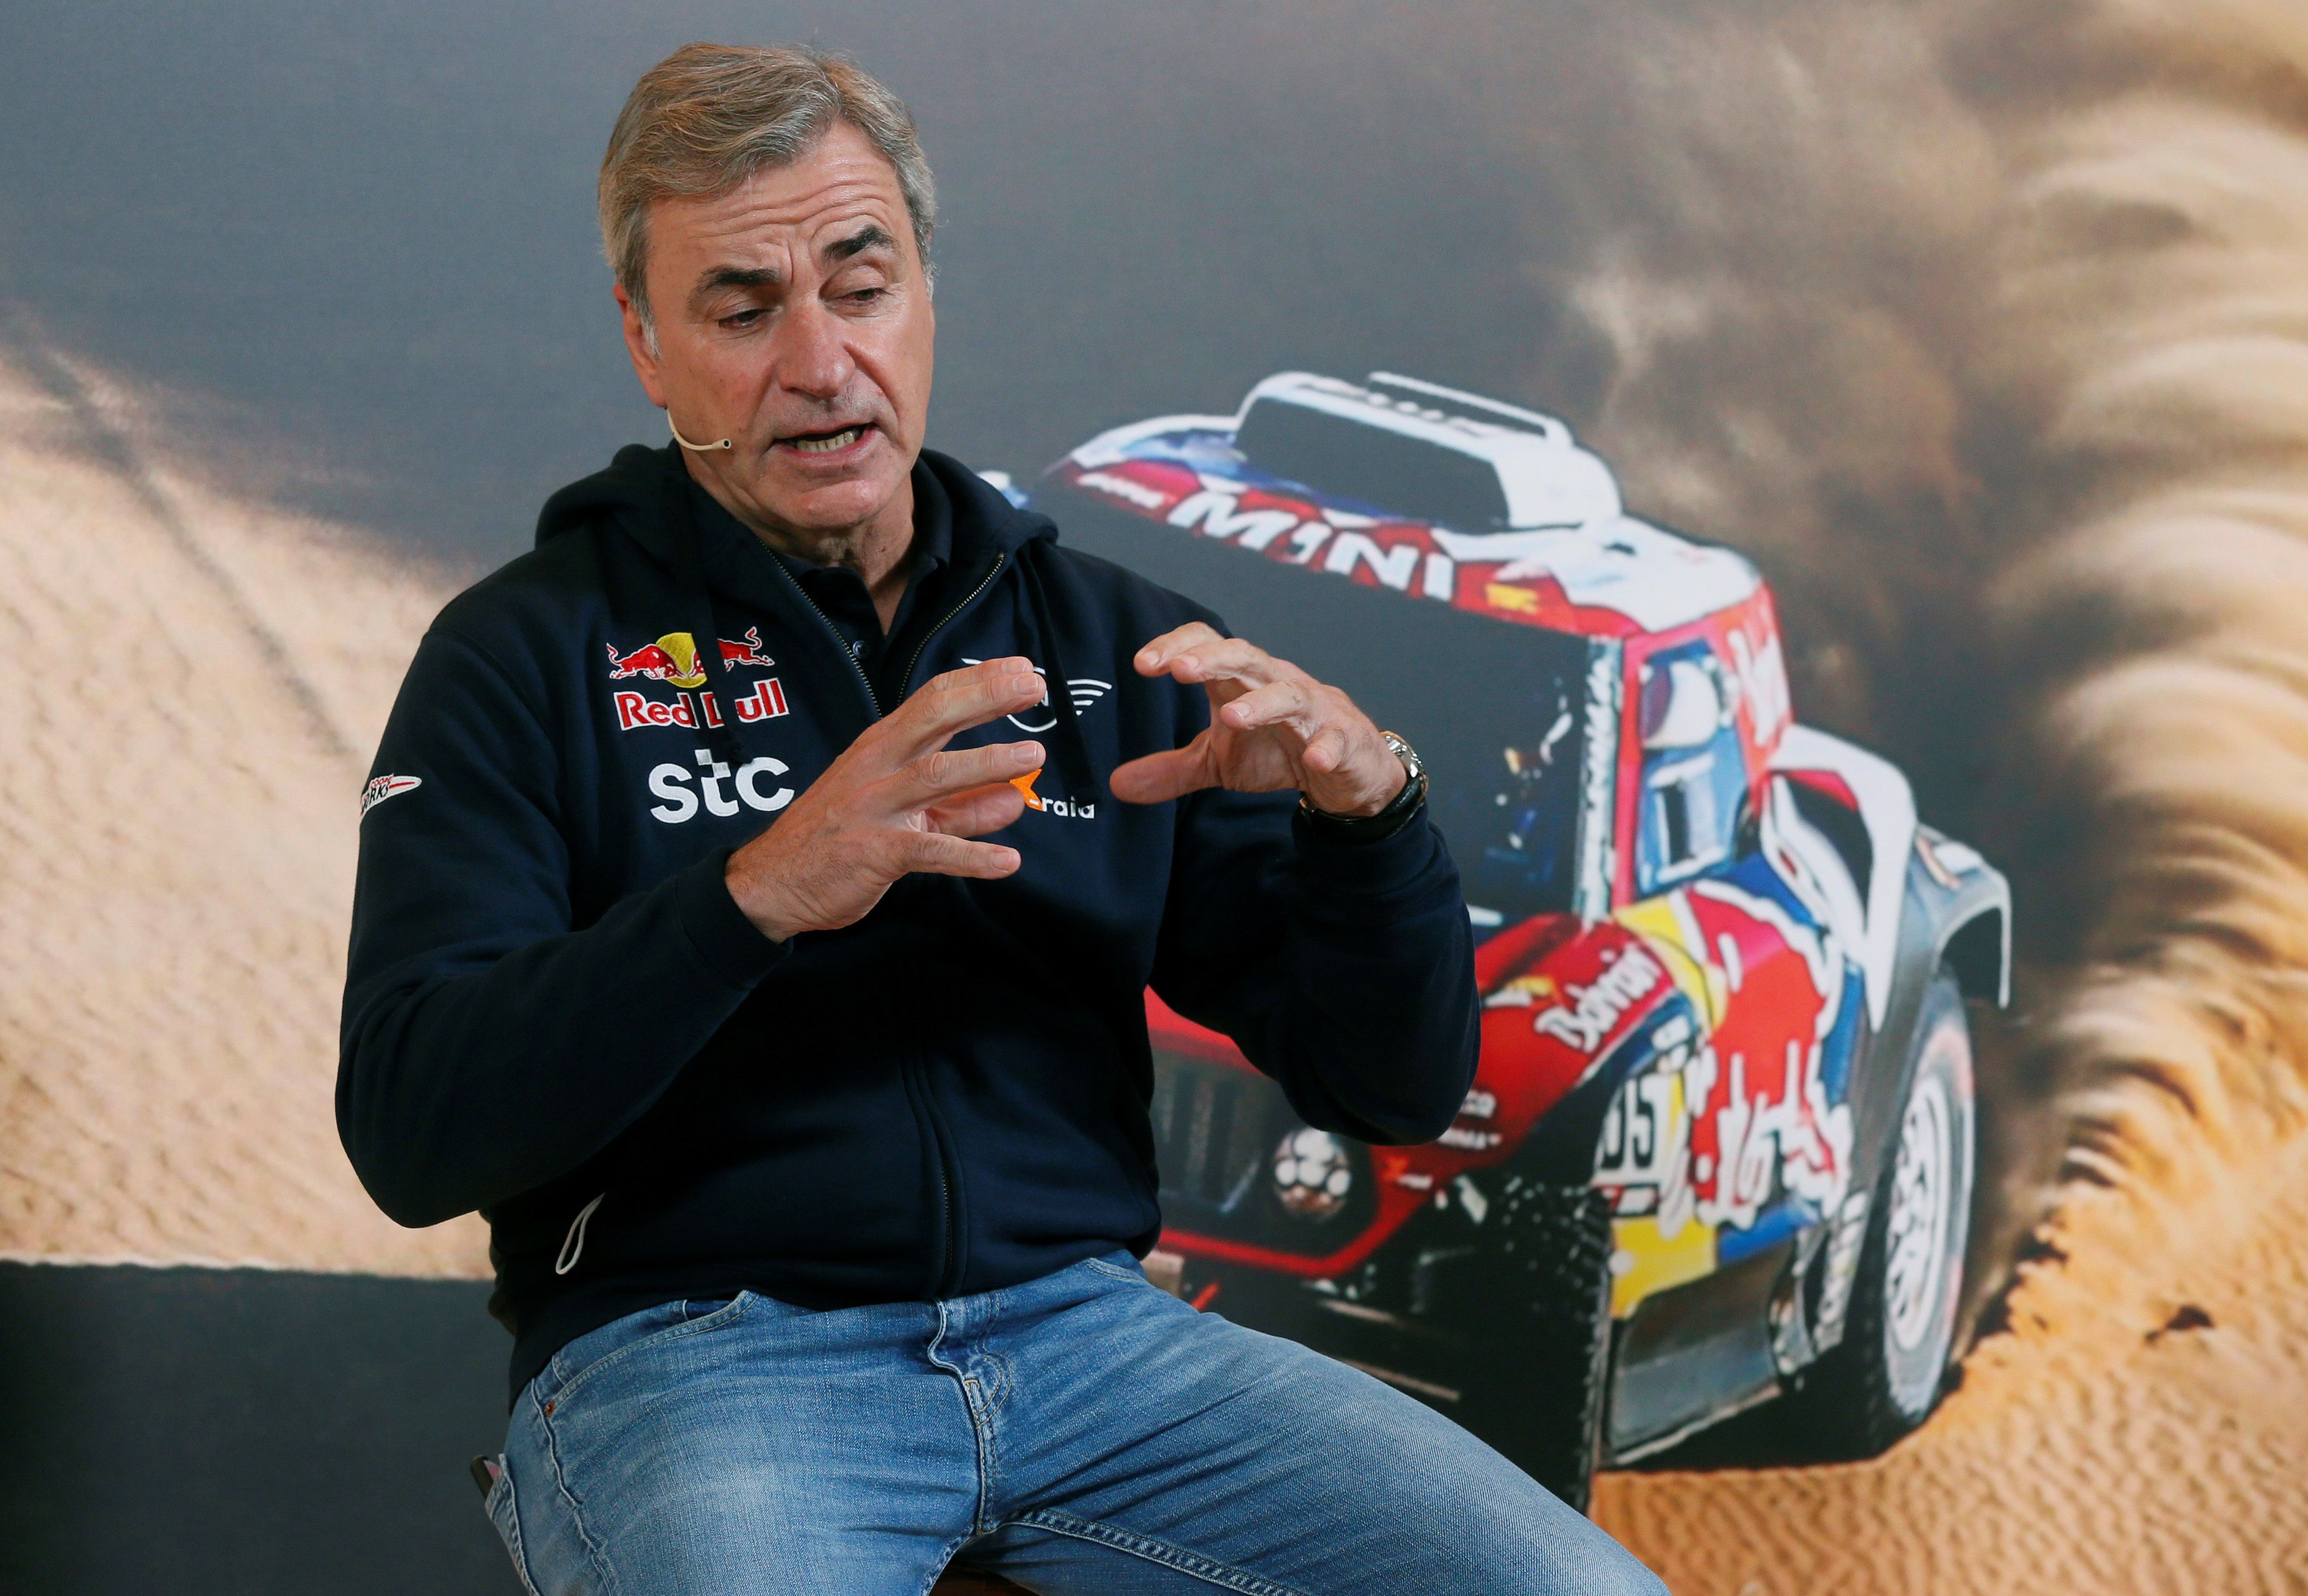 El piloto español de rally Carlos Sáinz, habló sobre sus expectativas para la edición 43 del Rally Dakar en Arabia Saudí. (Foto Prensa Libre: EFE)